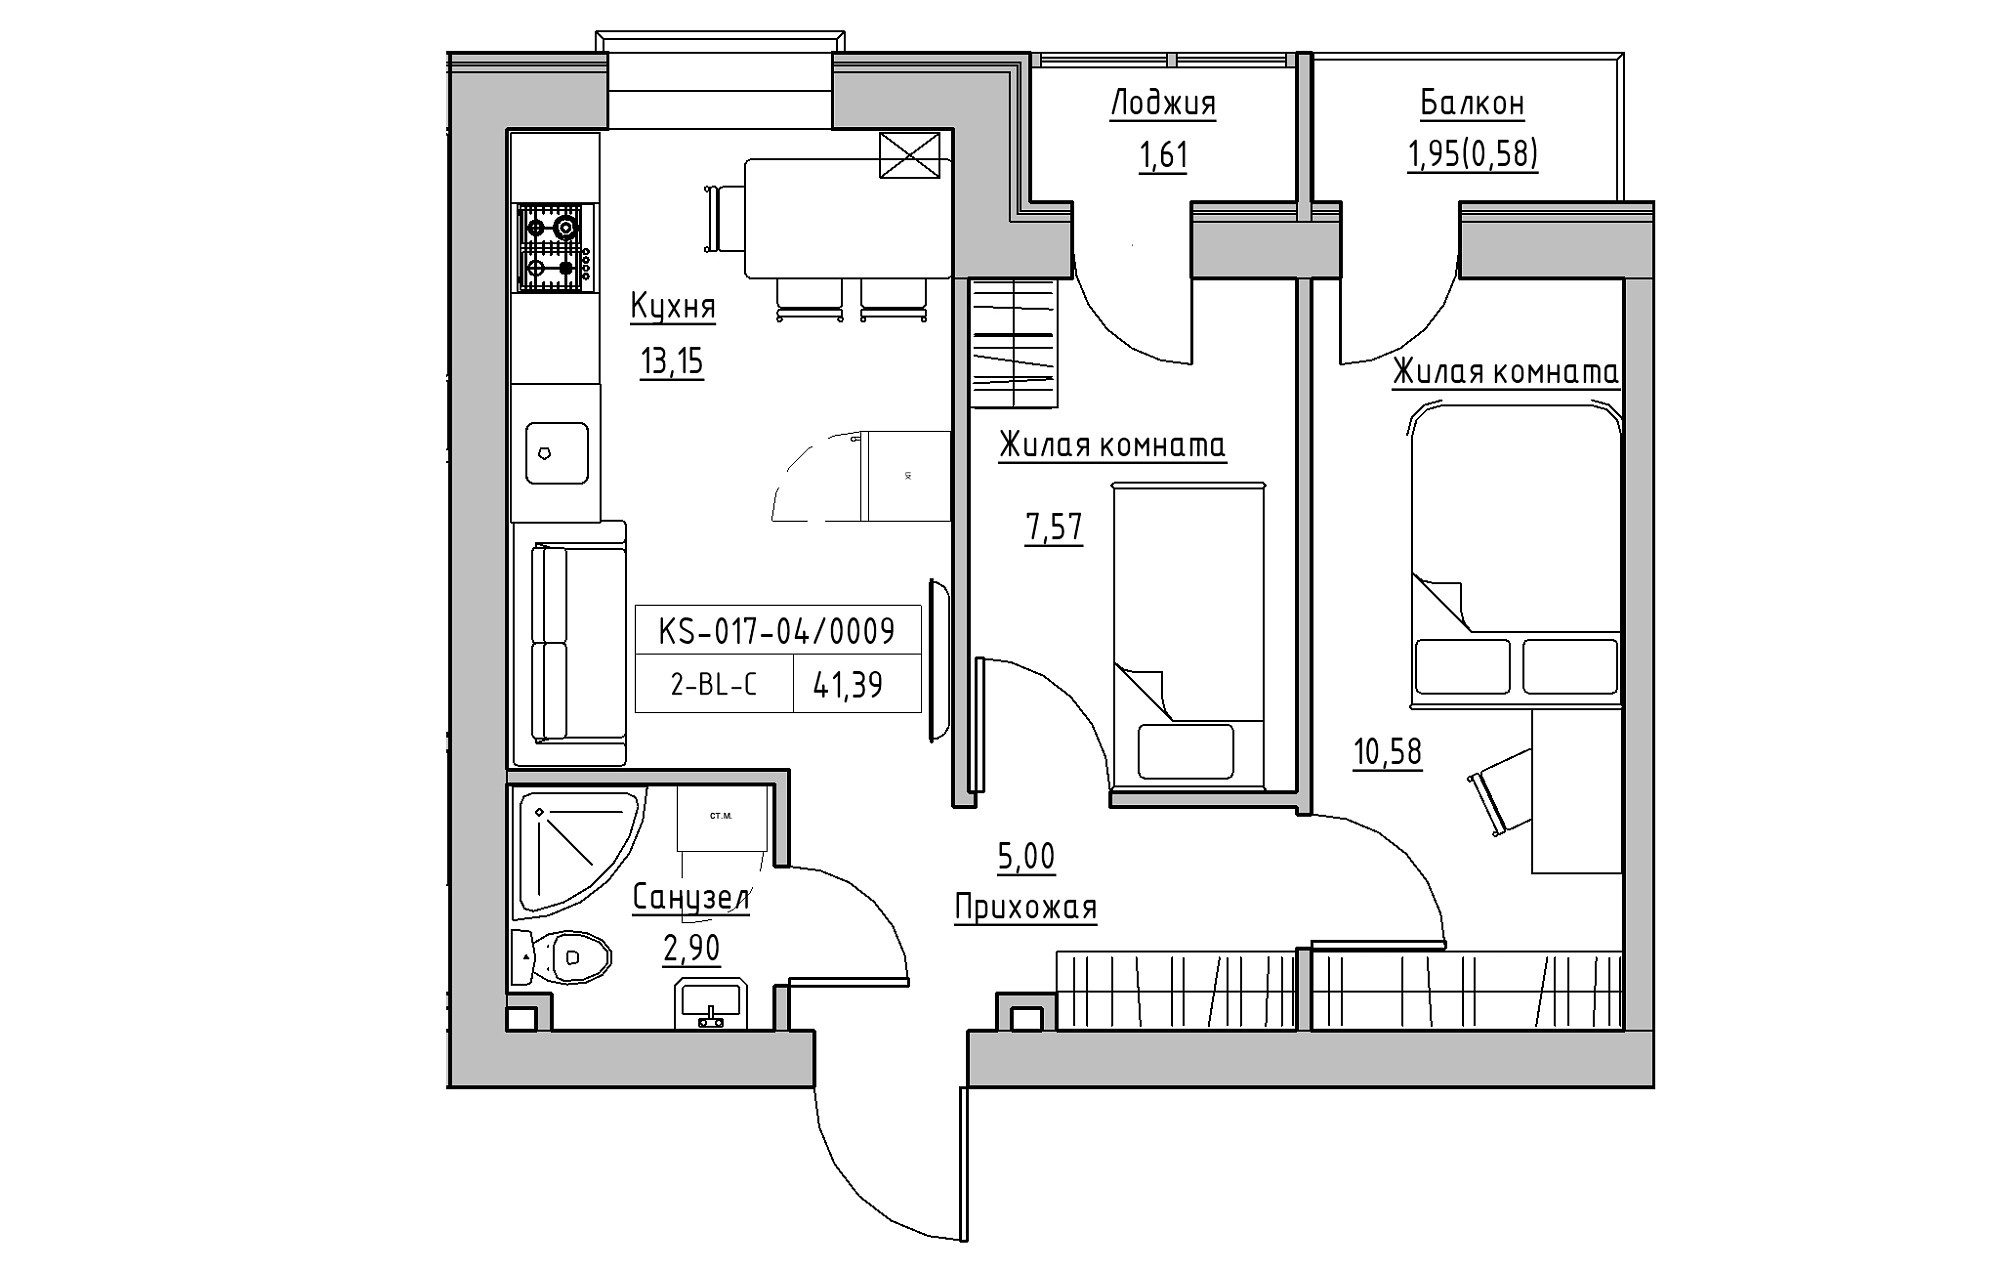 Планировка 2-к квартира площей 41.39м2, KS-017-04/0009.